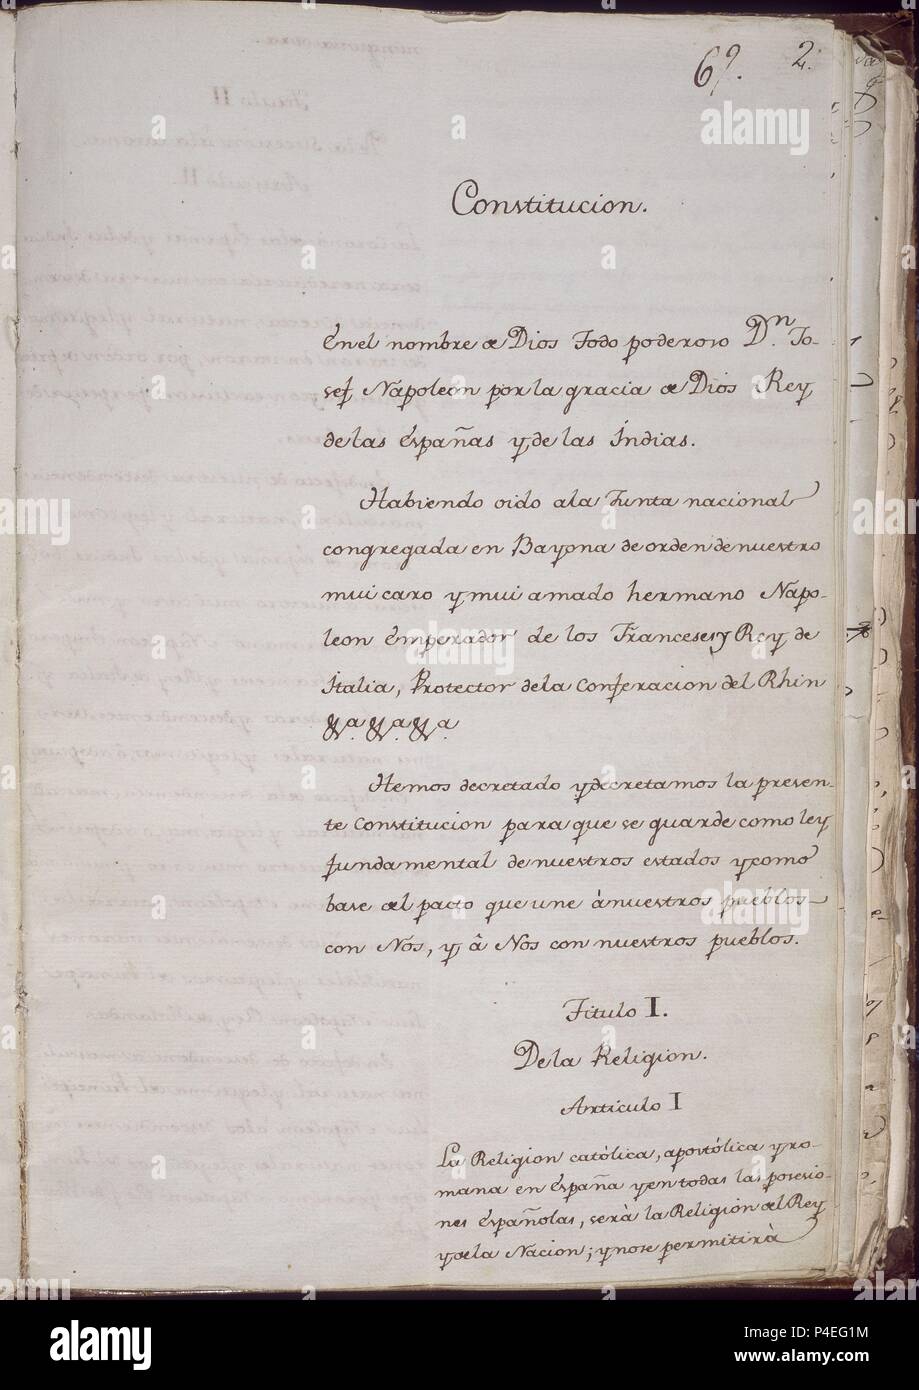 CONSTITUCION DE BAYONA 6 DE JULIO DE 1808 - PAGINA 2. Location: CONGRESO DE LOS DIPUTADOS-BIBLIOTECA, MADRID, SPAIN. Stock Photo